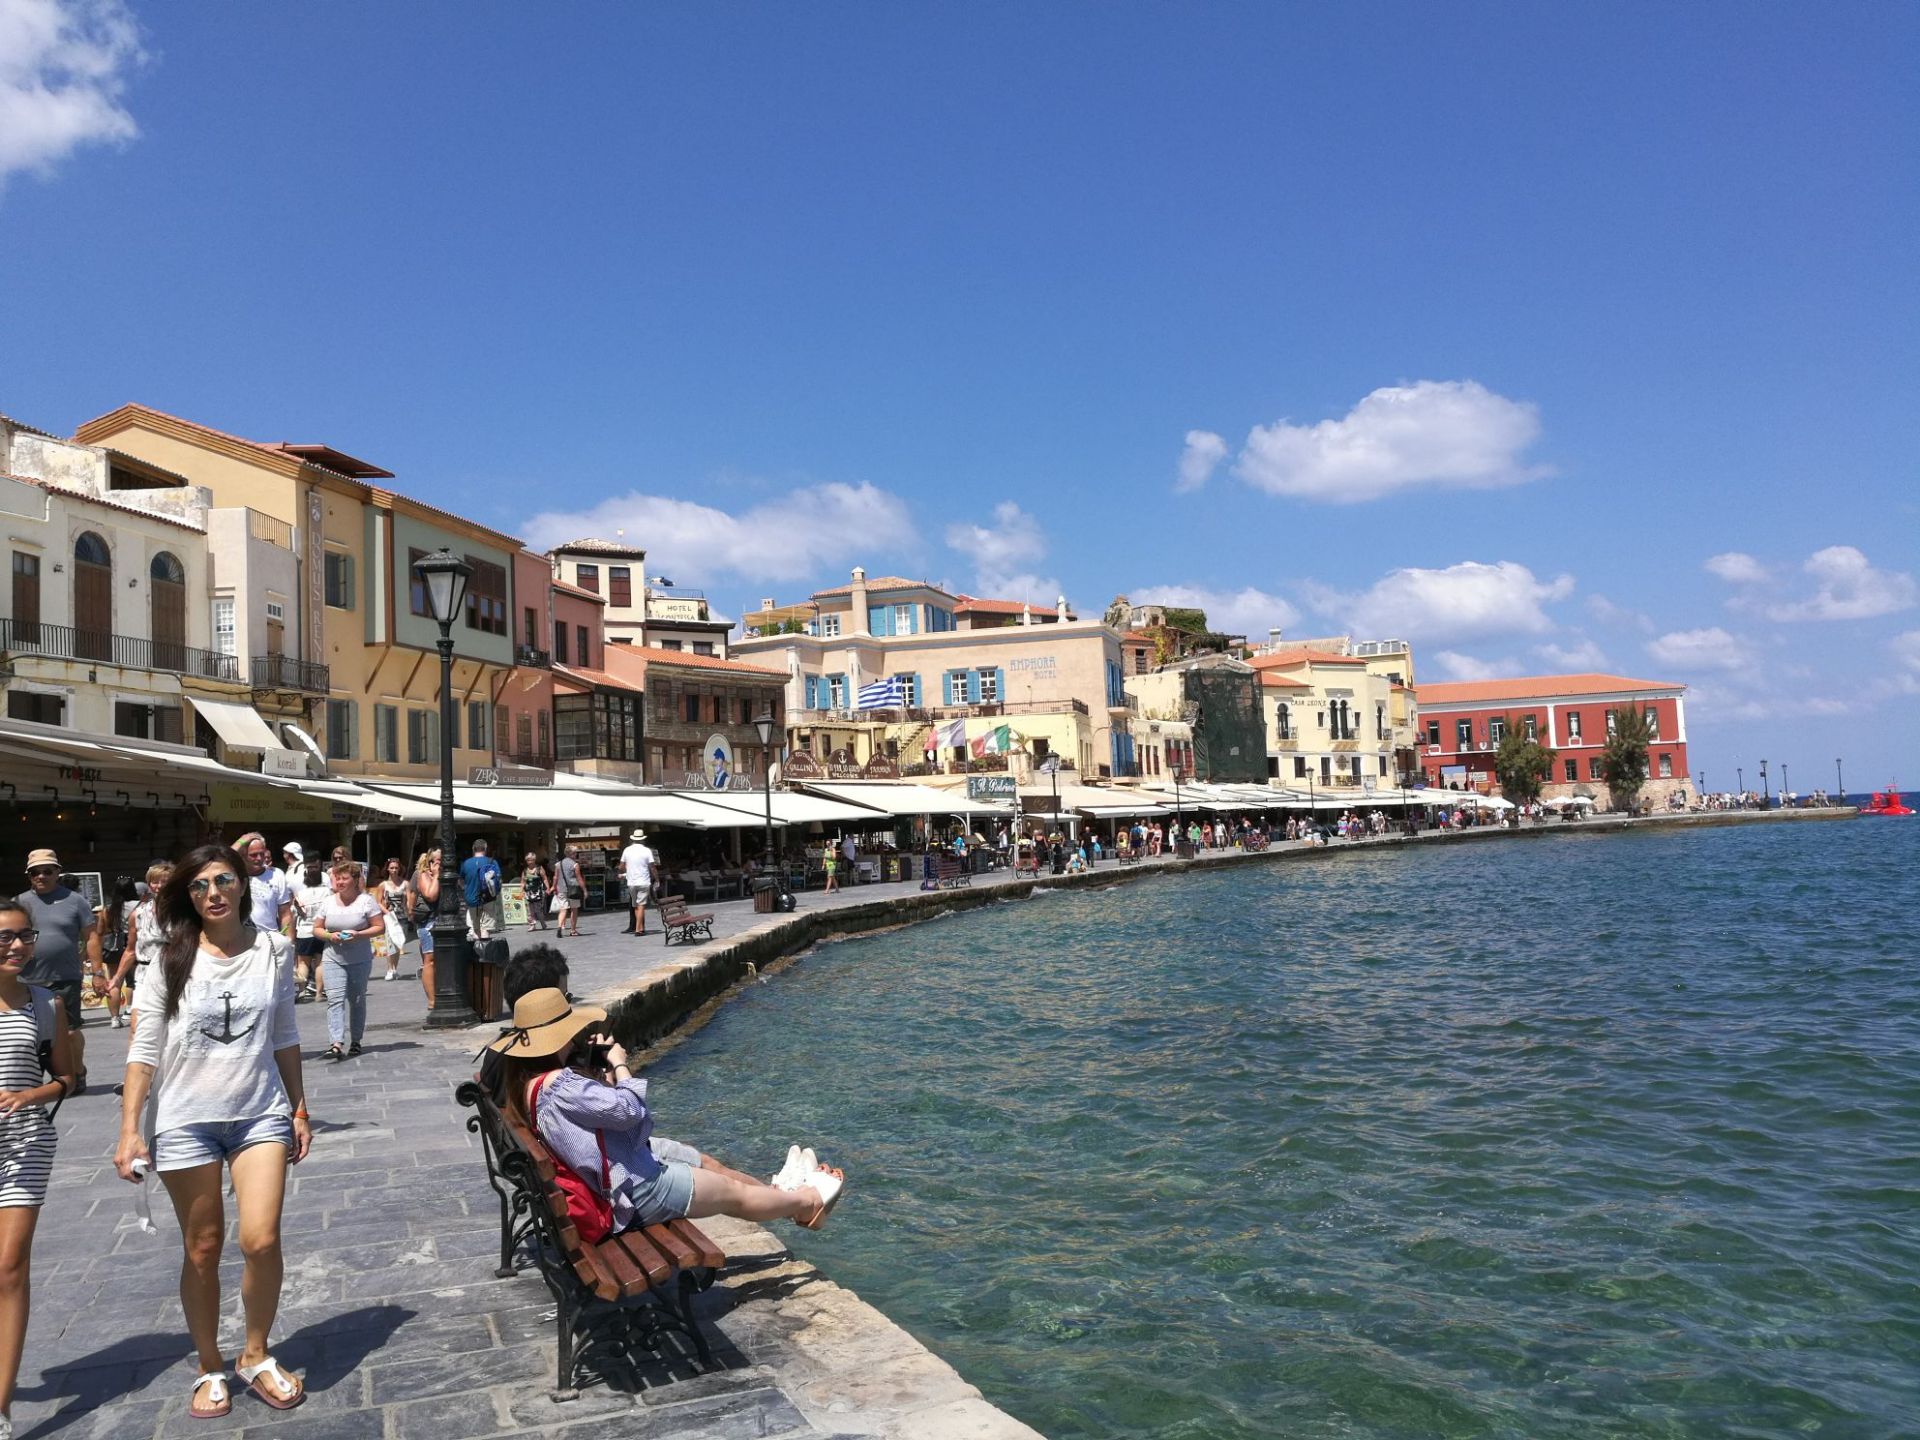 哈尼亚是位于克里特岛西北岸的一个港口城市，是克里特岛哈尼亚州的首府，威尼斯人于1285年开始统治哈尼